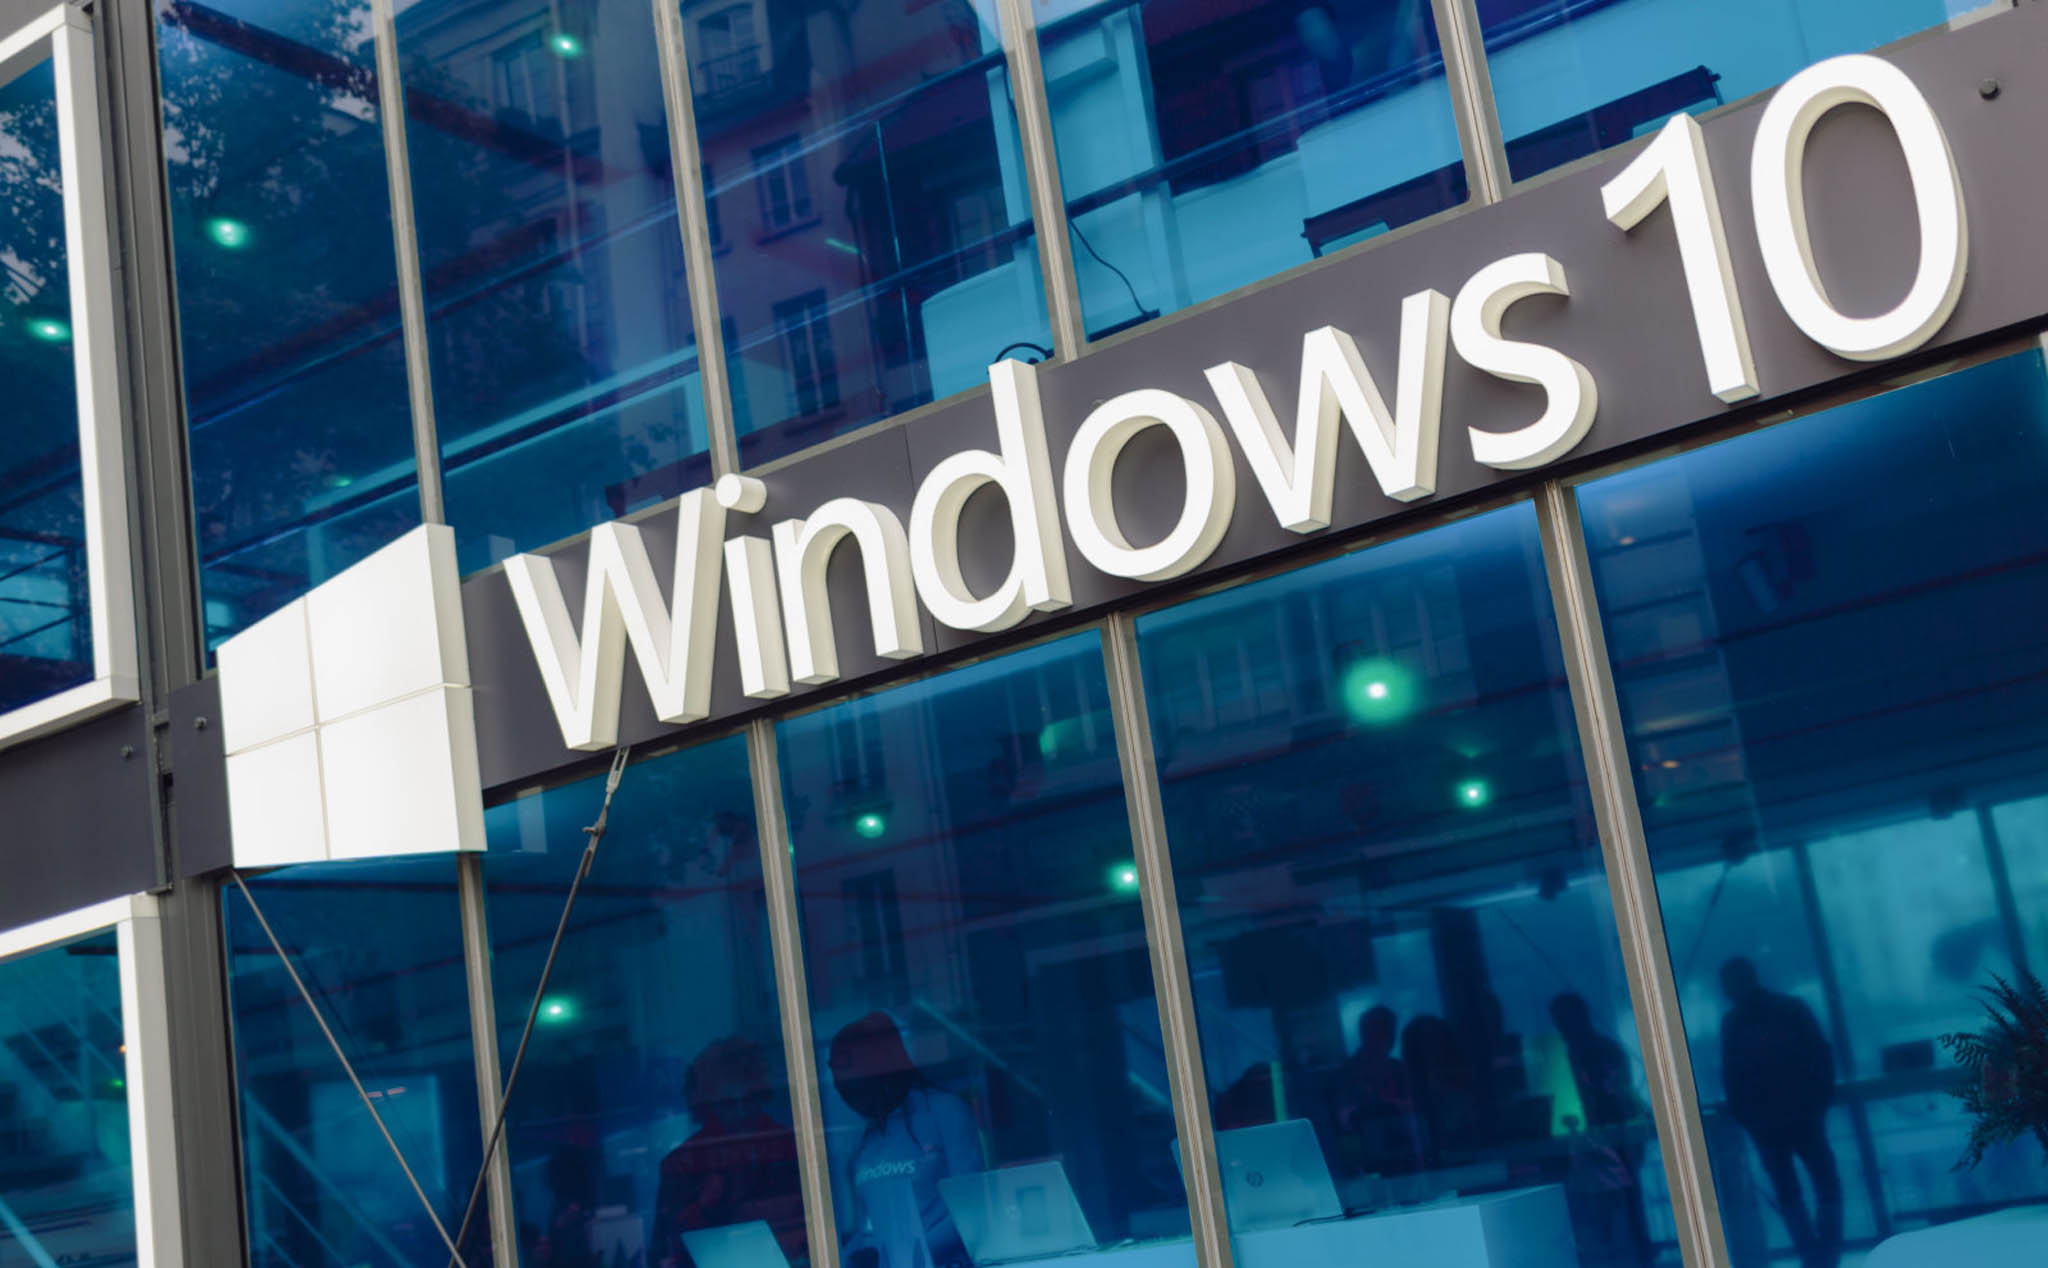 Ước tính sẽ có 1 tỷ thiết bị chạy Windows 10 vào năm 2020